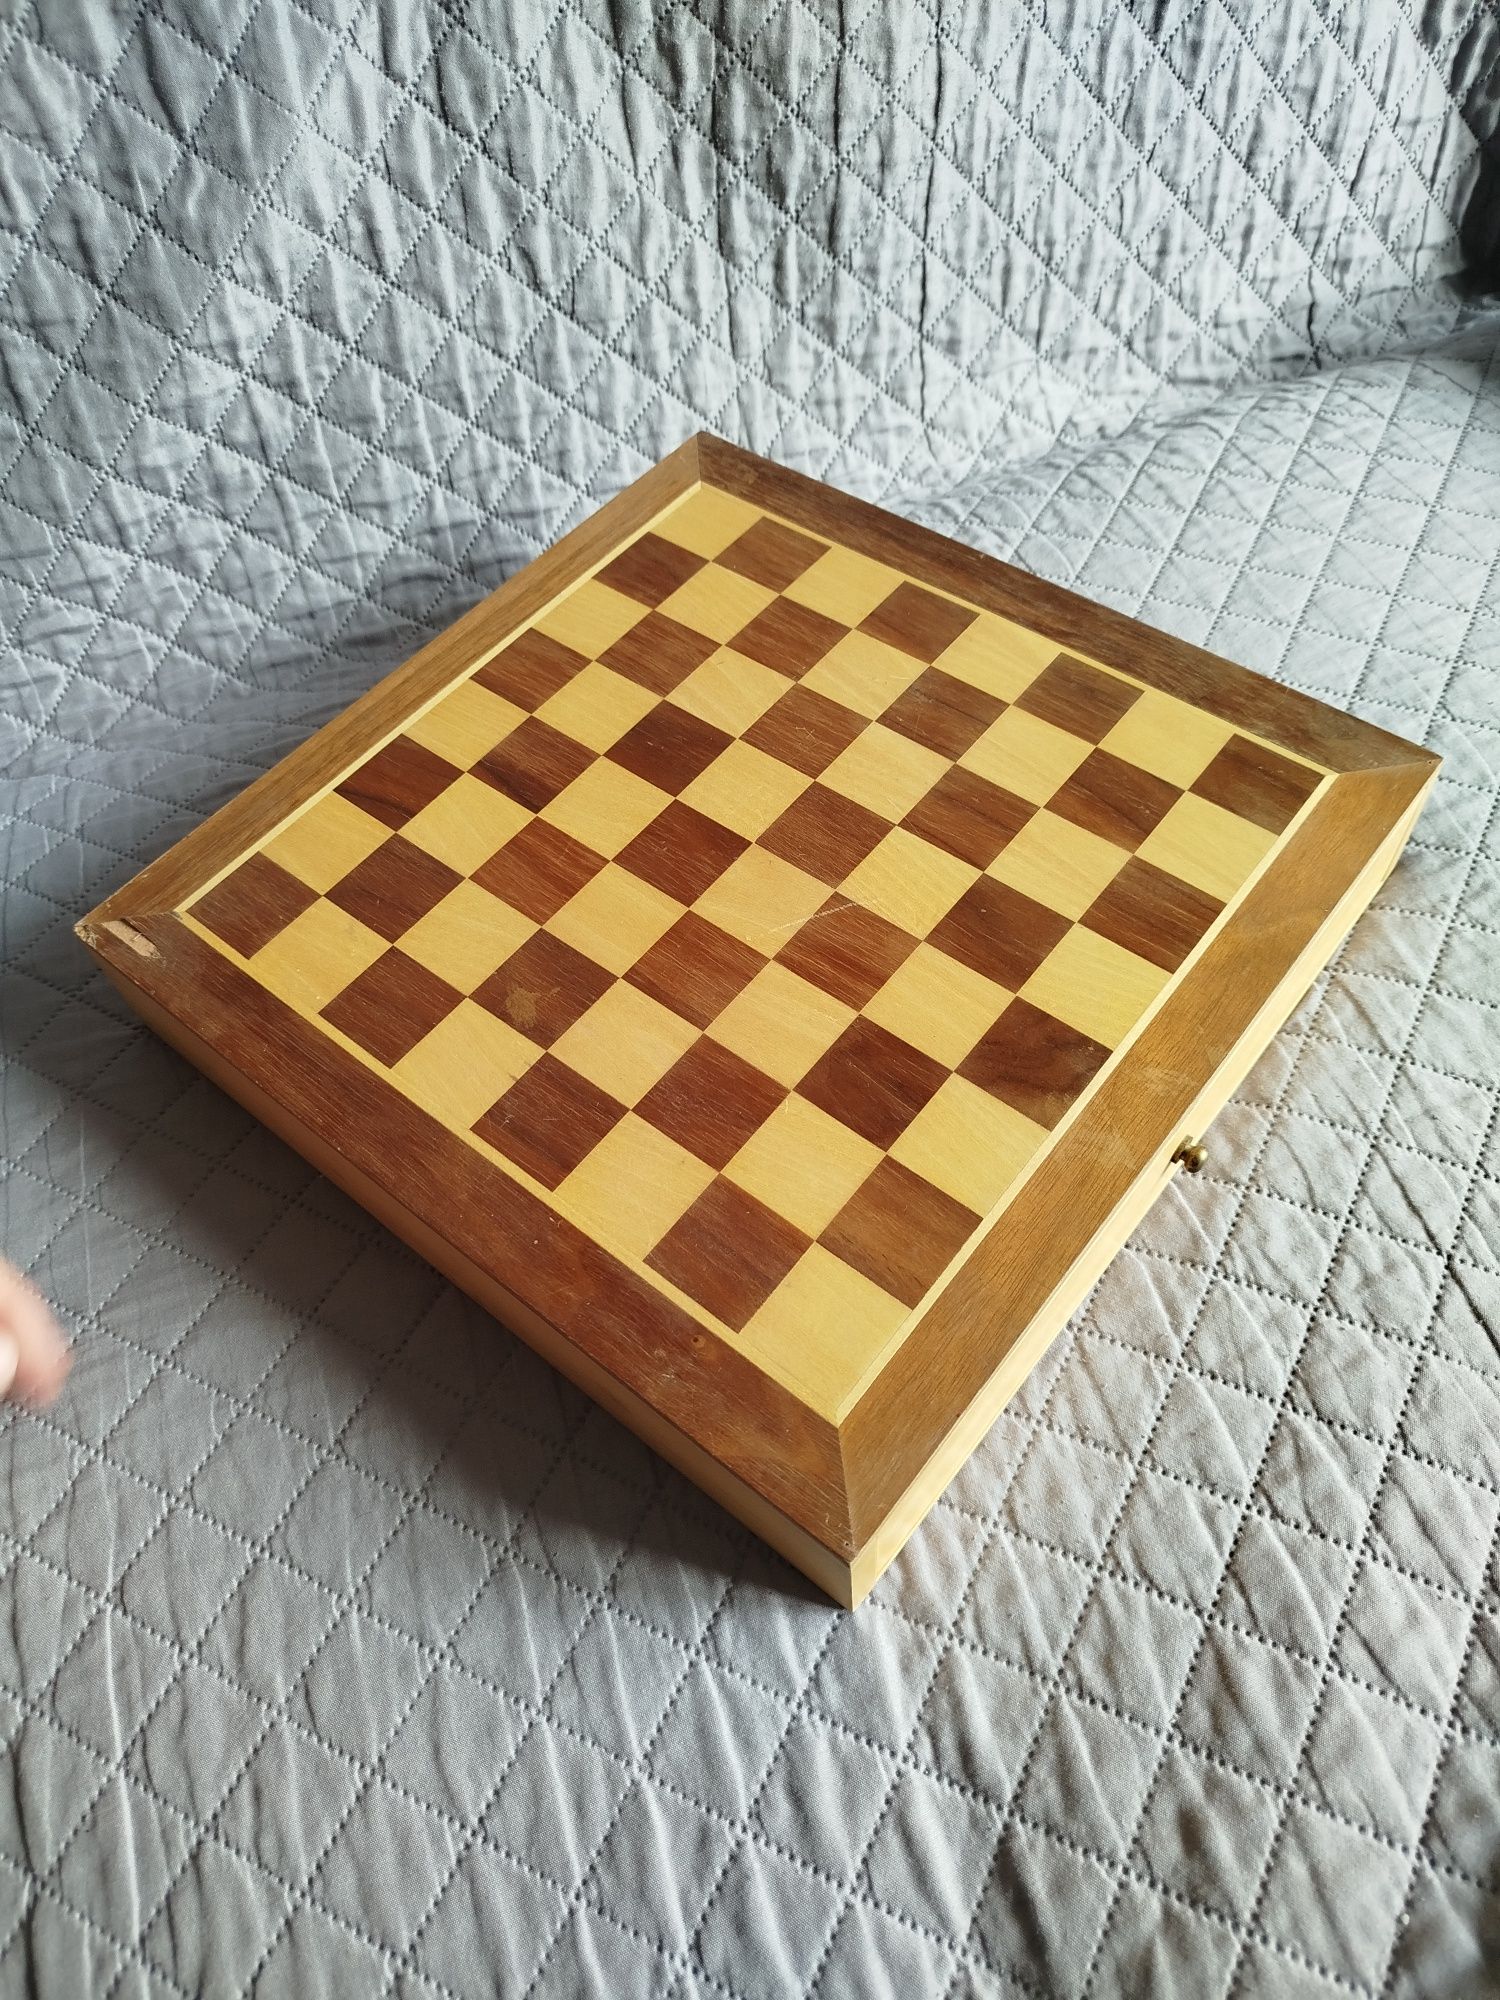 Класически дървен шах